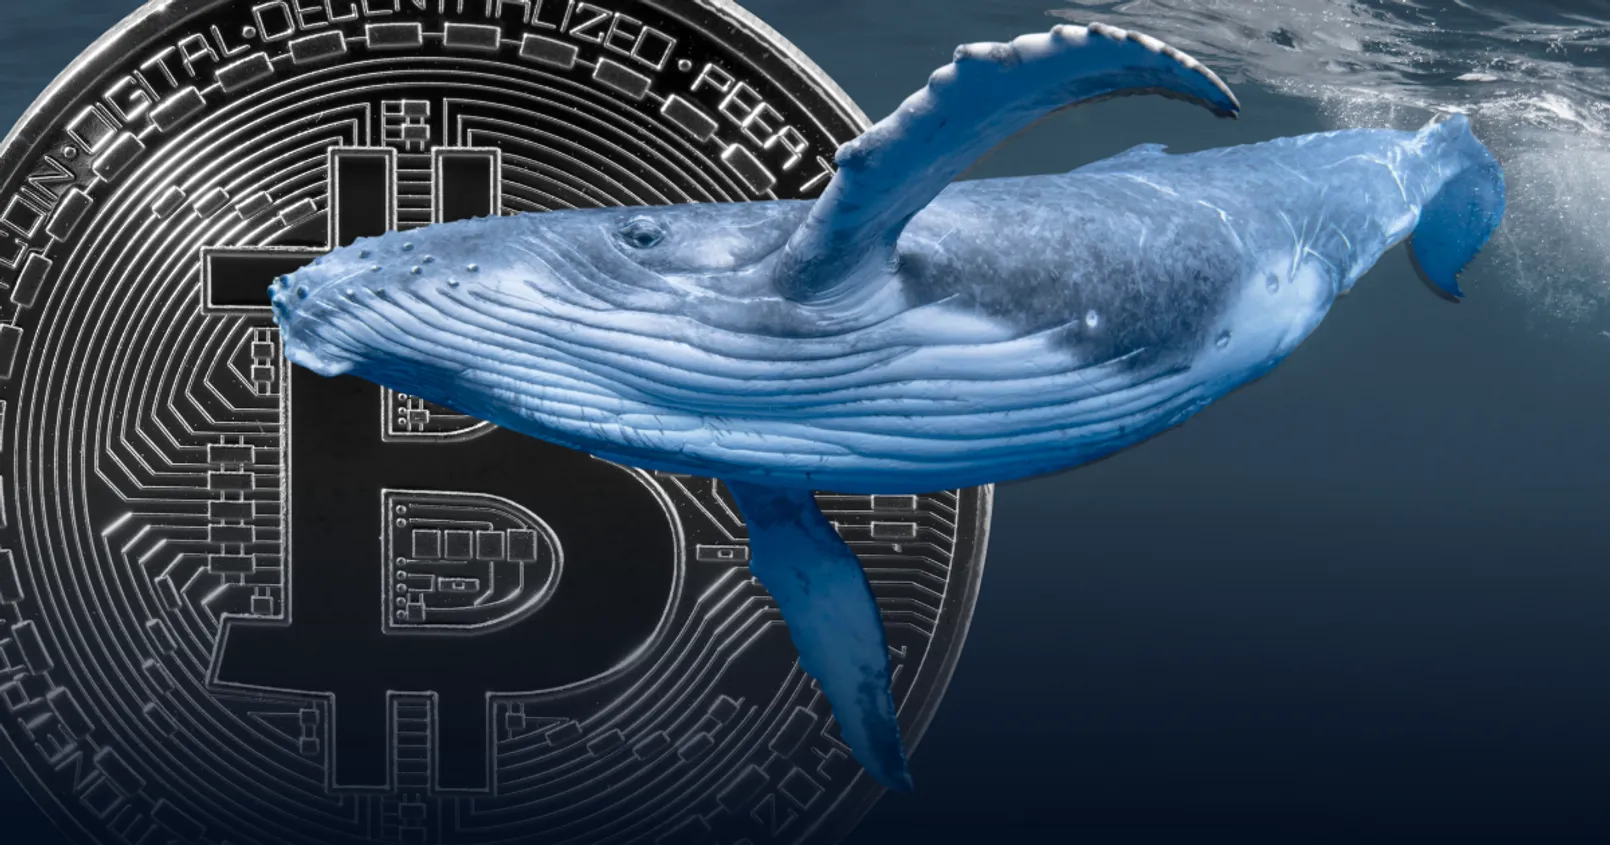 เป็นกังวล! นักวิเคราะห์คริปโตของ Santiment พบ 'วาฬ' เทขาย Bitcoin จำนวนมาก